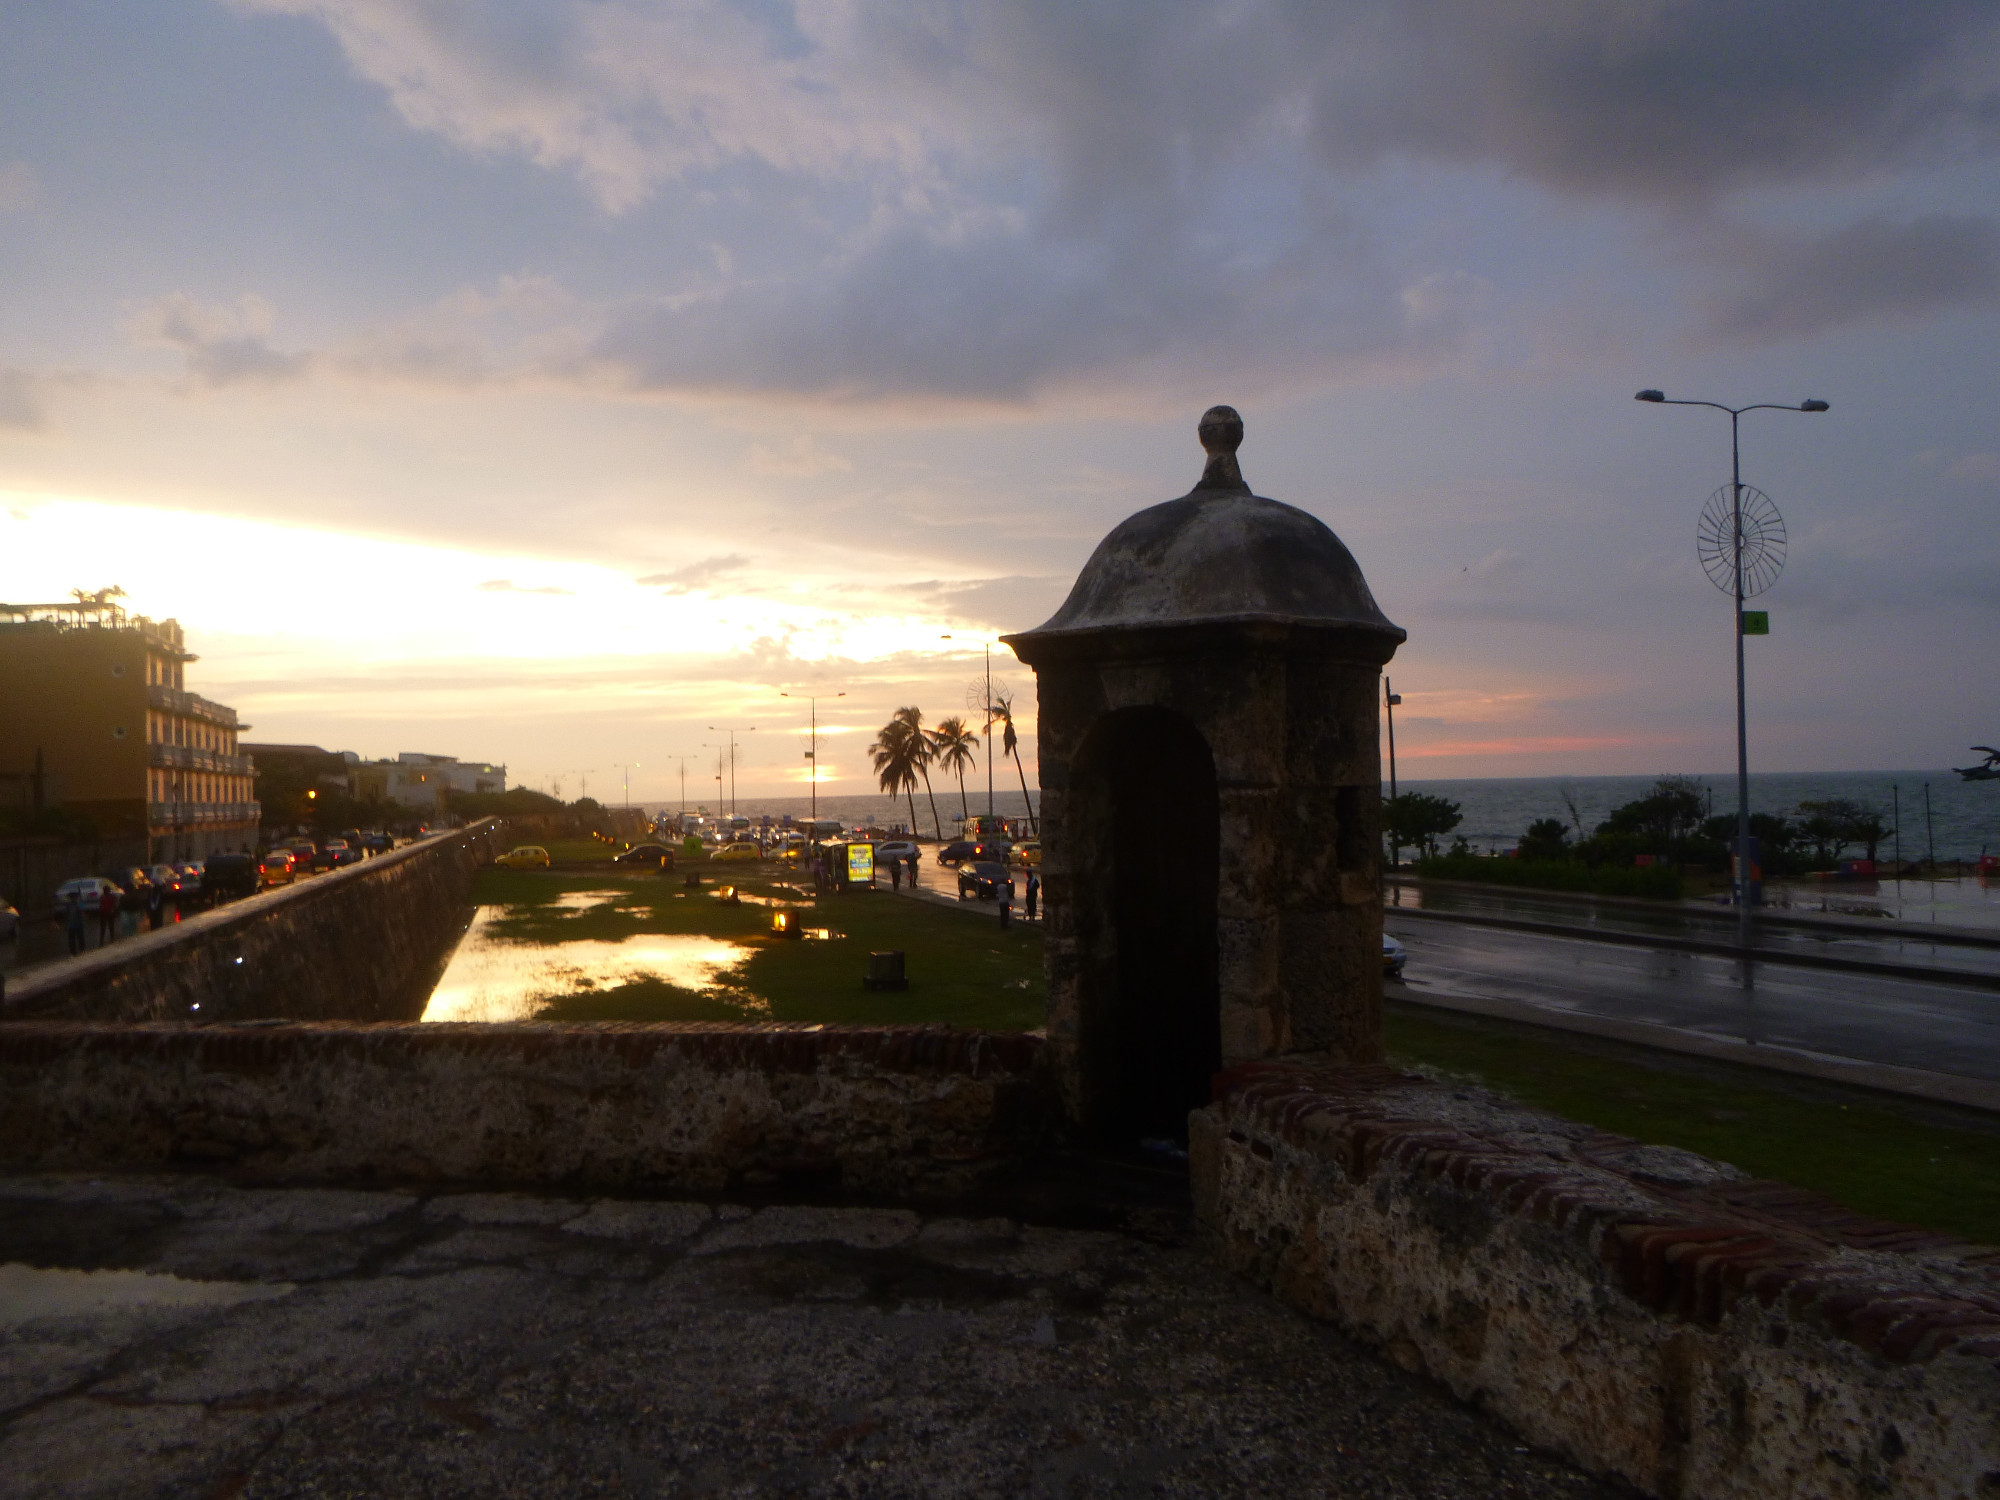 Sunset over The Baluarte de San Ignacio